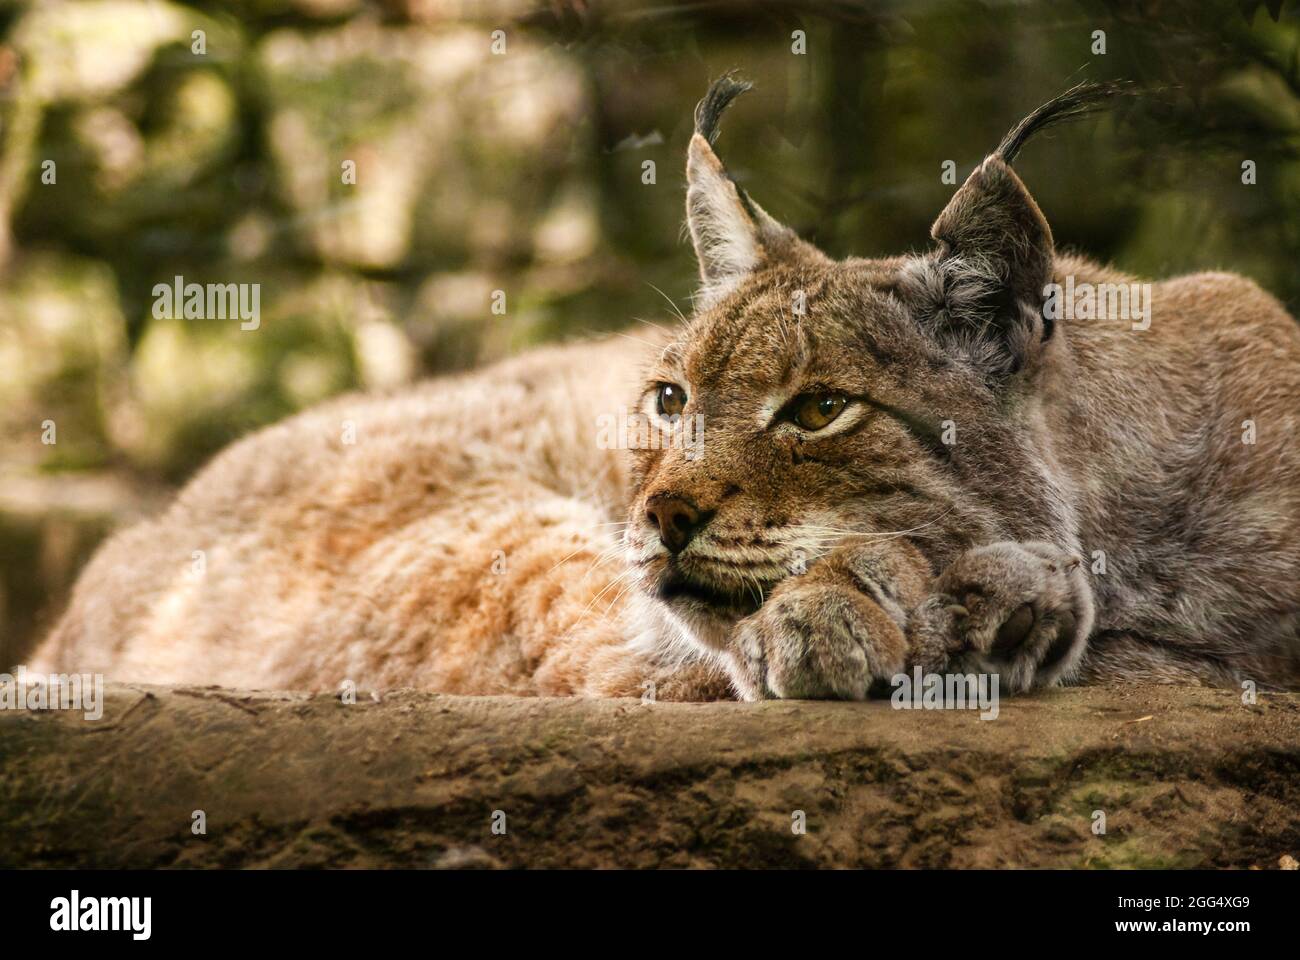 Lynx snoozing et alerte en même temps. Gros plan. Statut de conservation de l'UICN LC le moins préoccupant. Faune sauvage - captive. Photographie de zoo Banque D'Images